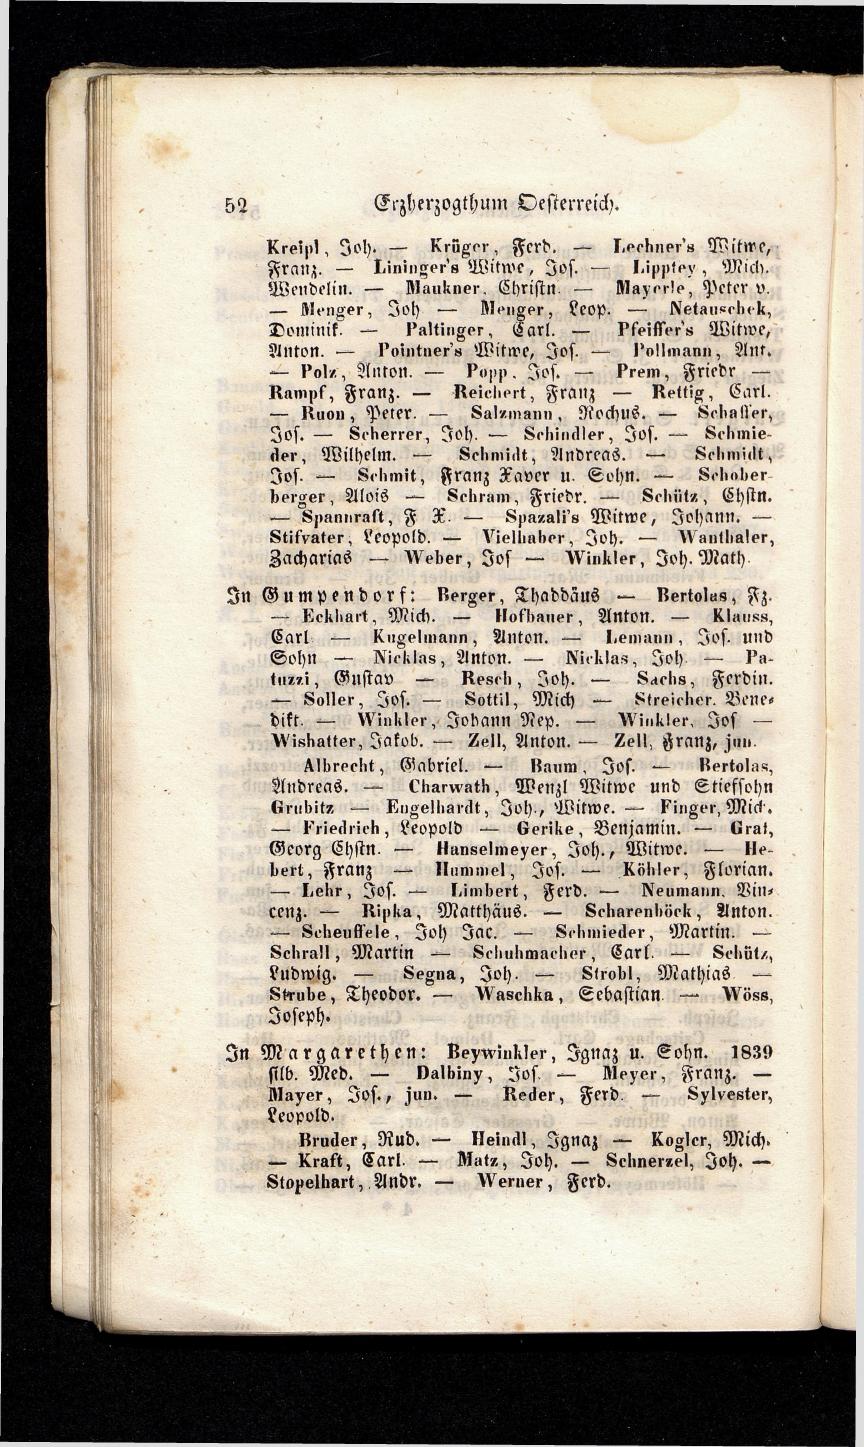 Grosses Adressbuch der Kaufleute. No. 13. Oesterreich ober u. unter der Enns 1844 - Seite 56